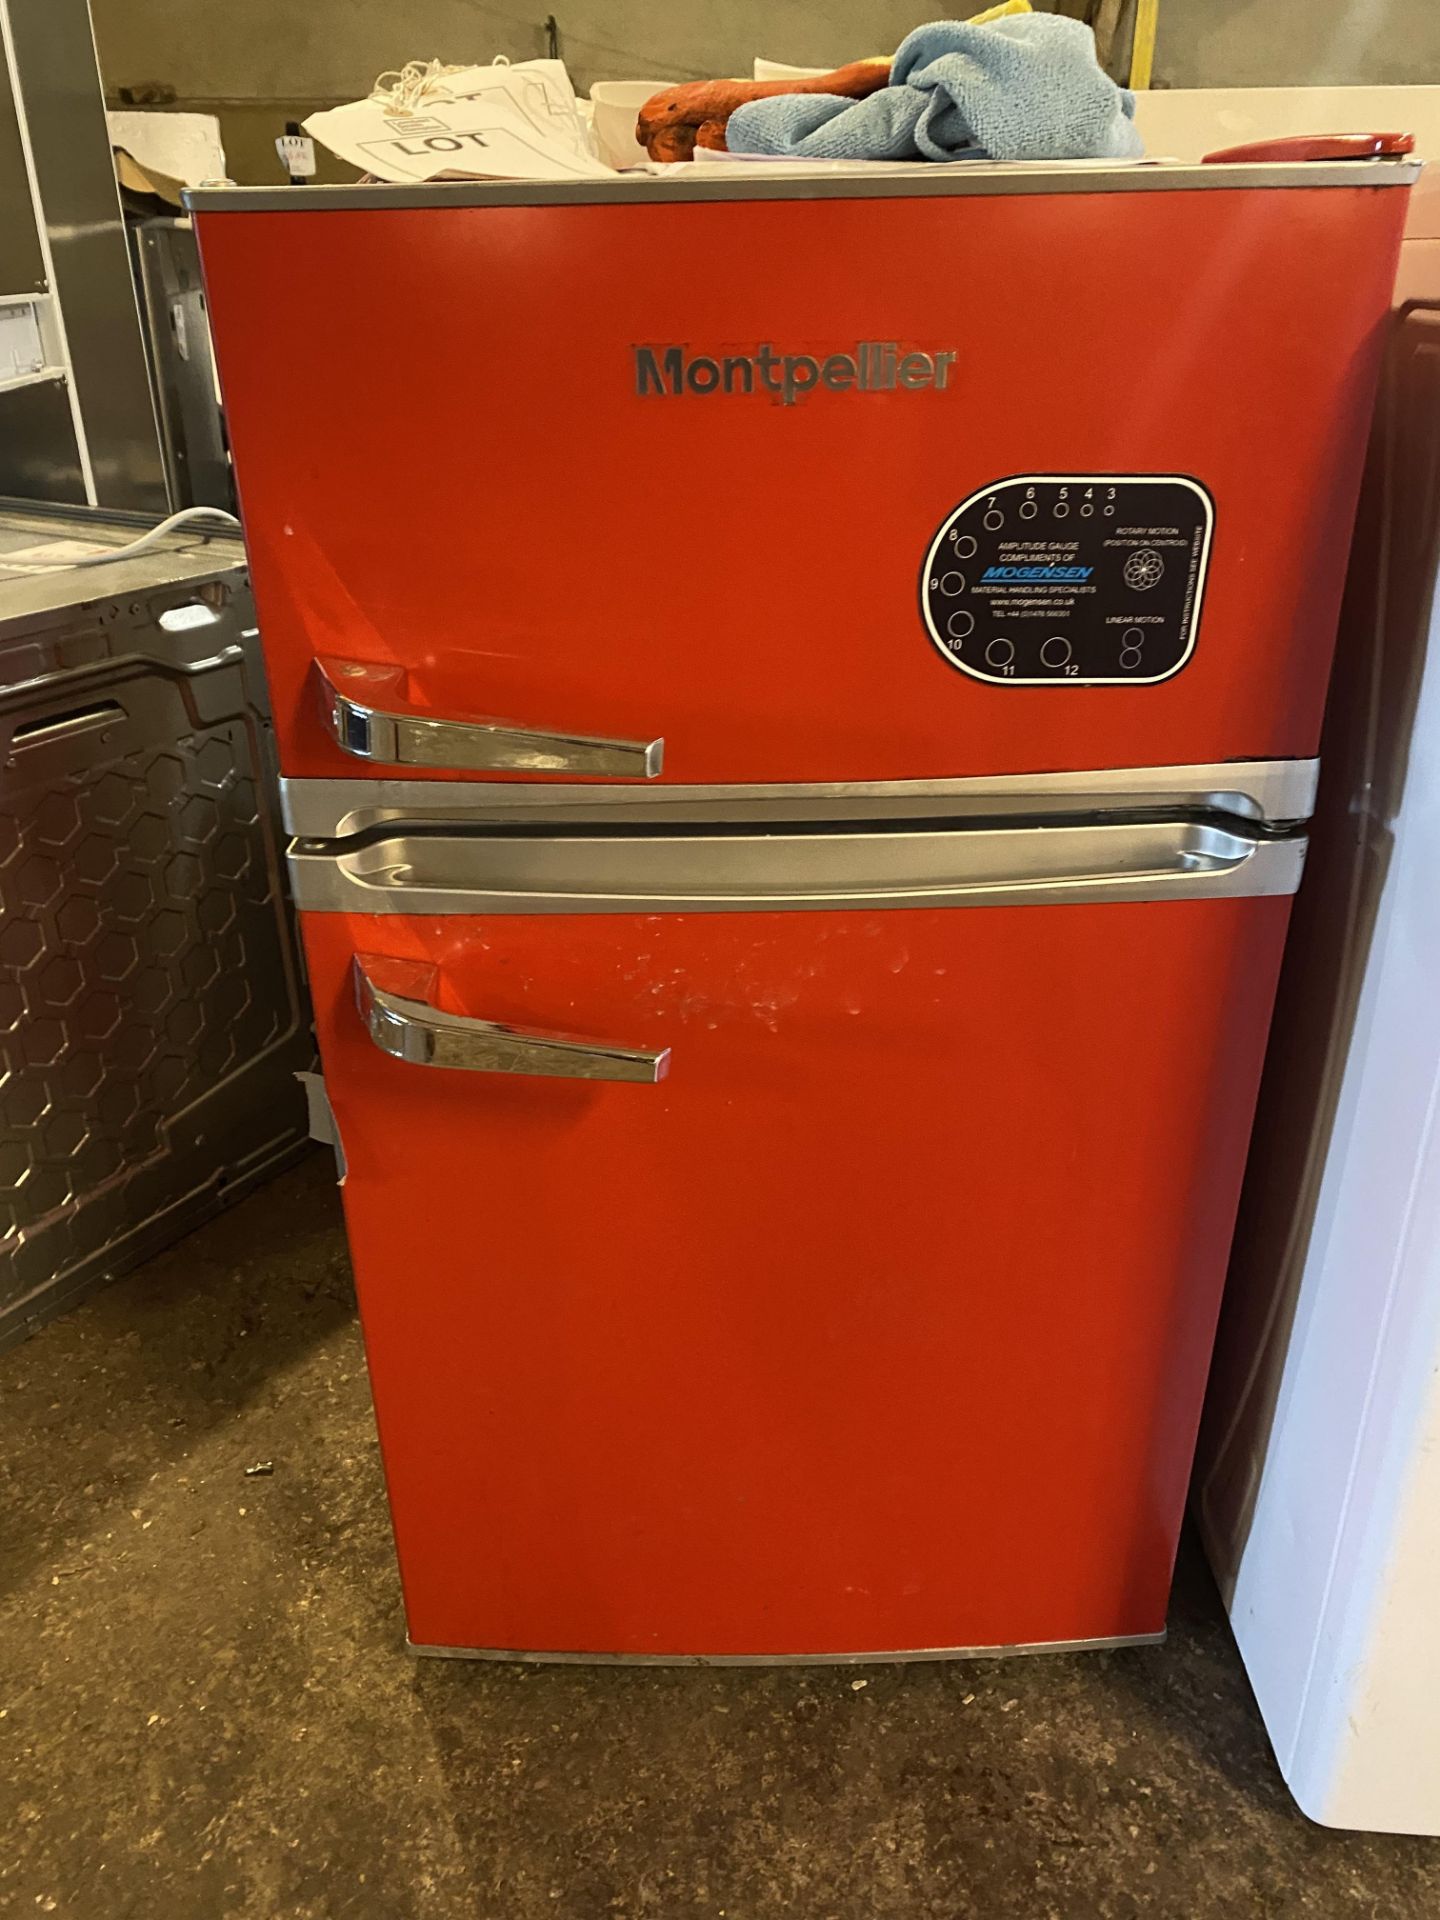 Logik L1014W20 washing machine and Montpellier fridge freezer - Image 3 of 5